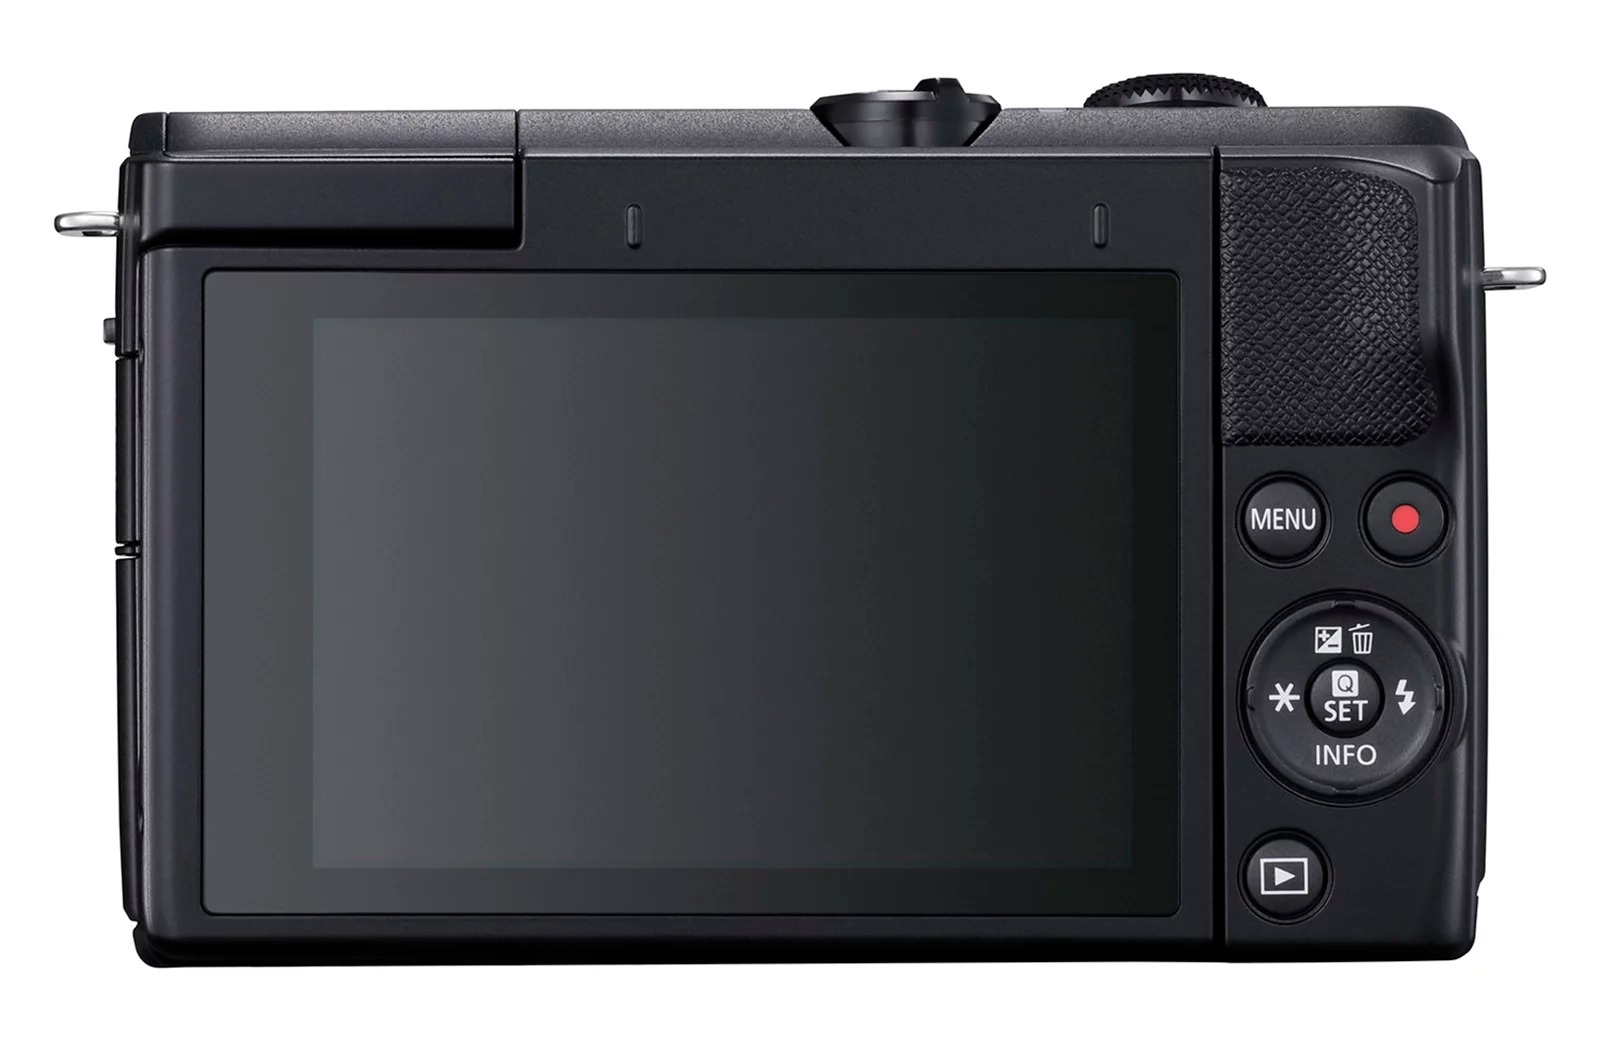 Canon ra mắt máy ảnh không gương lật EOS M200,
với khả năng lấy nét nhận diện mắt và quay video 4K.